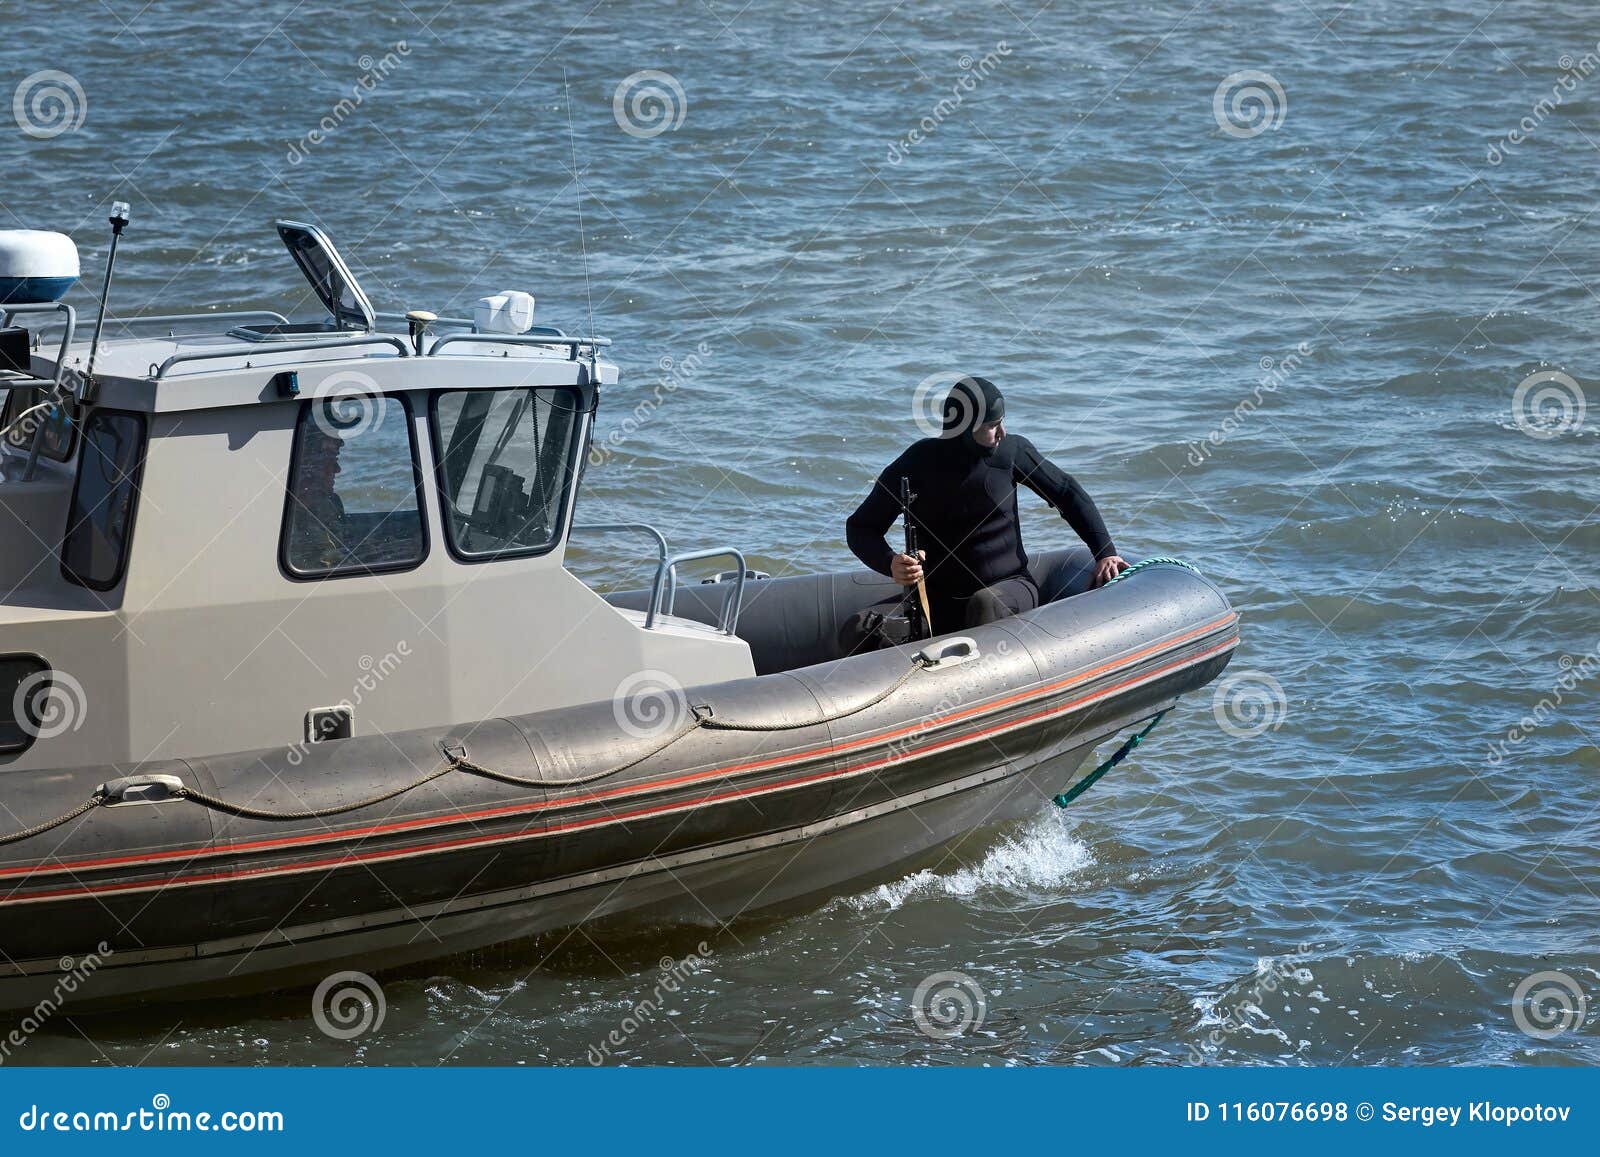 Un terroriste ou un saboteur dans un costume foncé sur un petit bateau. La Russie, Rostov-On-Don - 5 mai 2018 : Opération de démonstration pour neutraliser des terroristes ou des saboteurs sur le transport de l'eau pour la célébration du 100th anniversaire du régiment de Rostov des forces armées